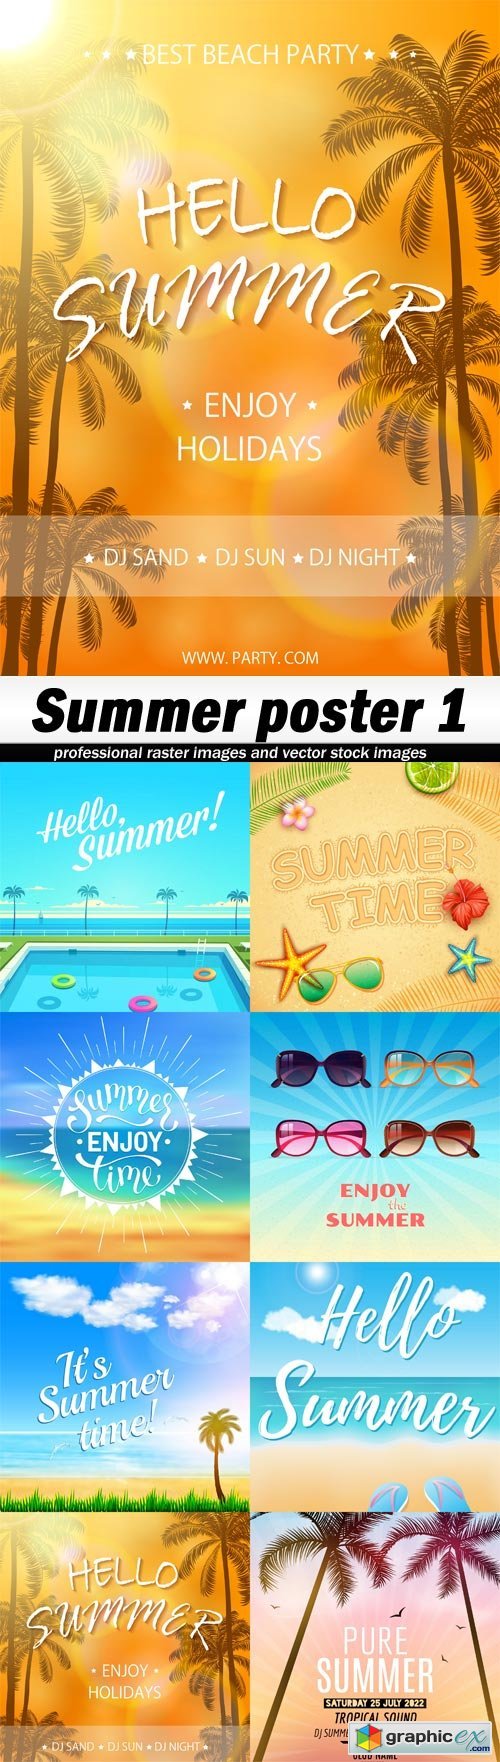 Summer poster 1 - 8 EPS